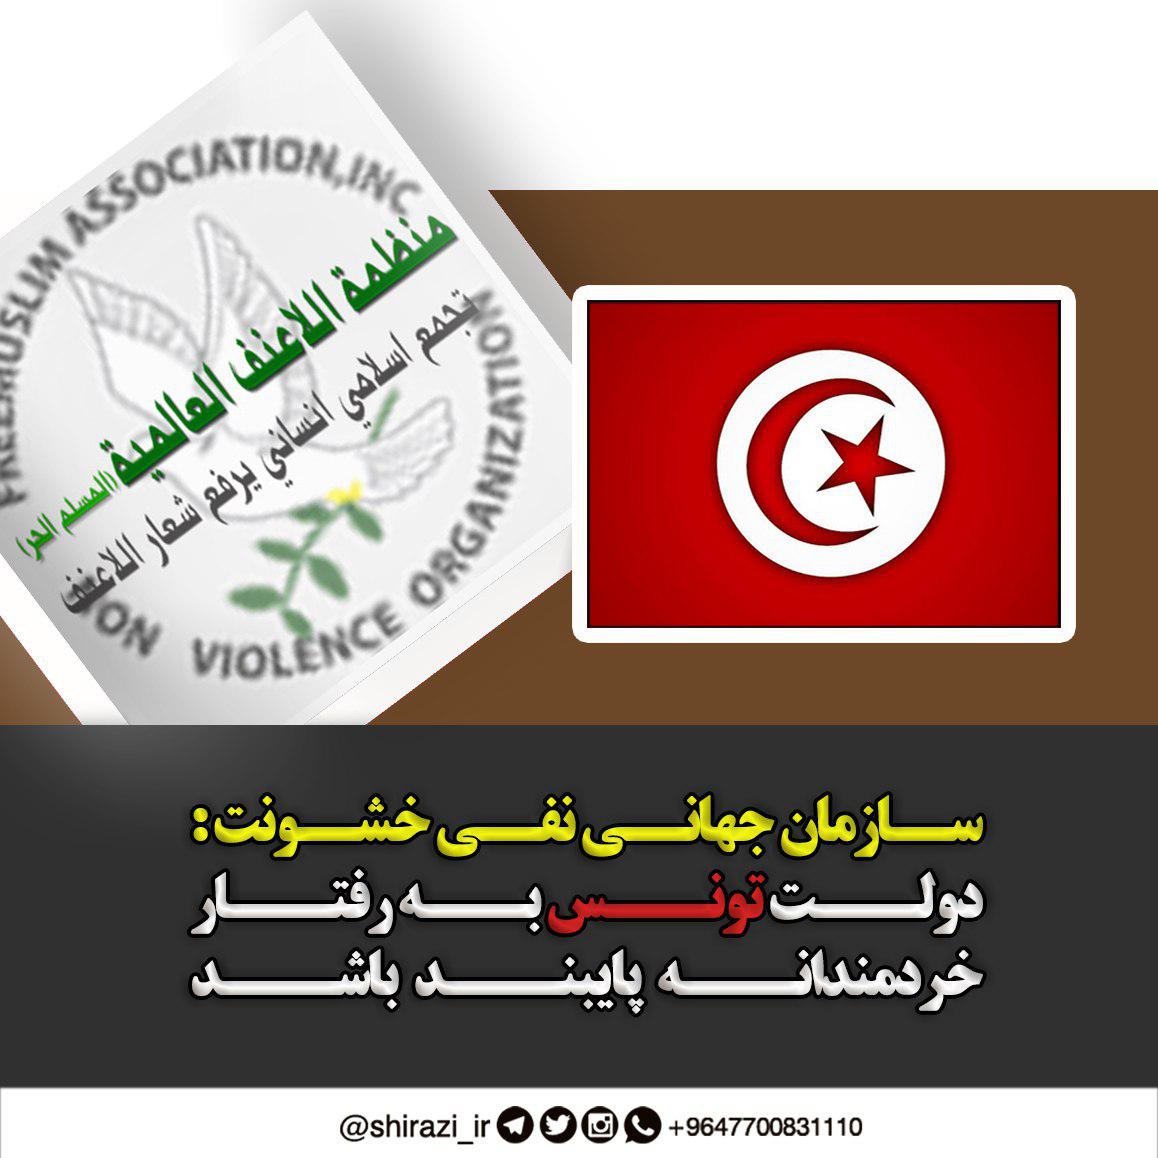 تصویر سازمان جهانی نفی خشونت: دولت تونس به رفتار خردمندانه پایبند باشد